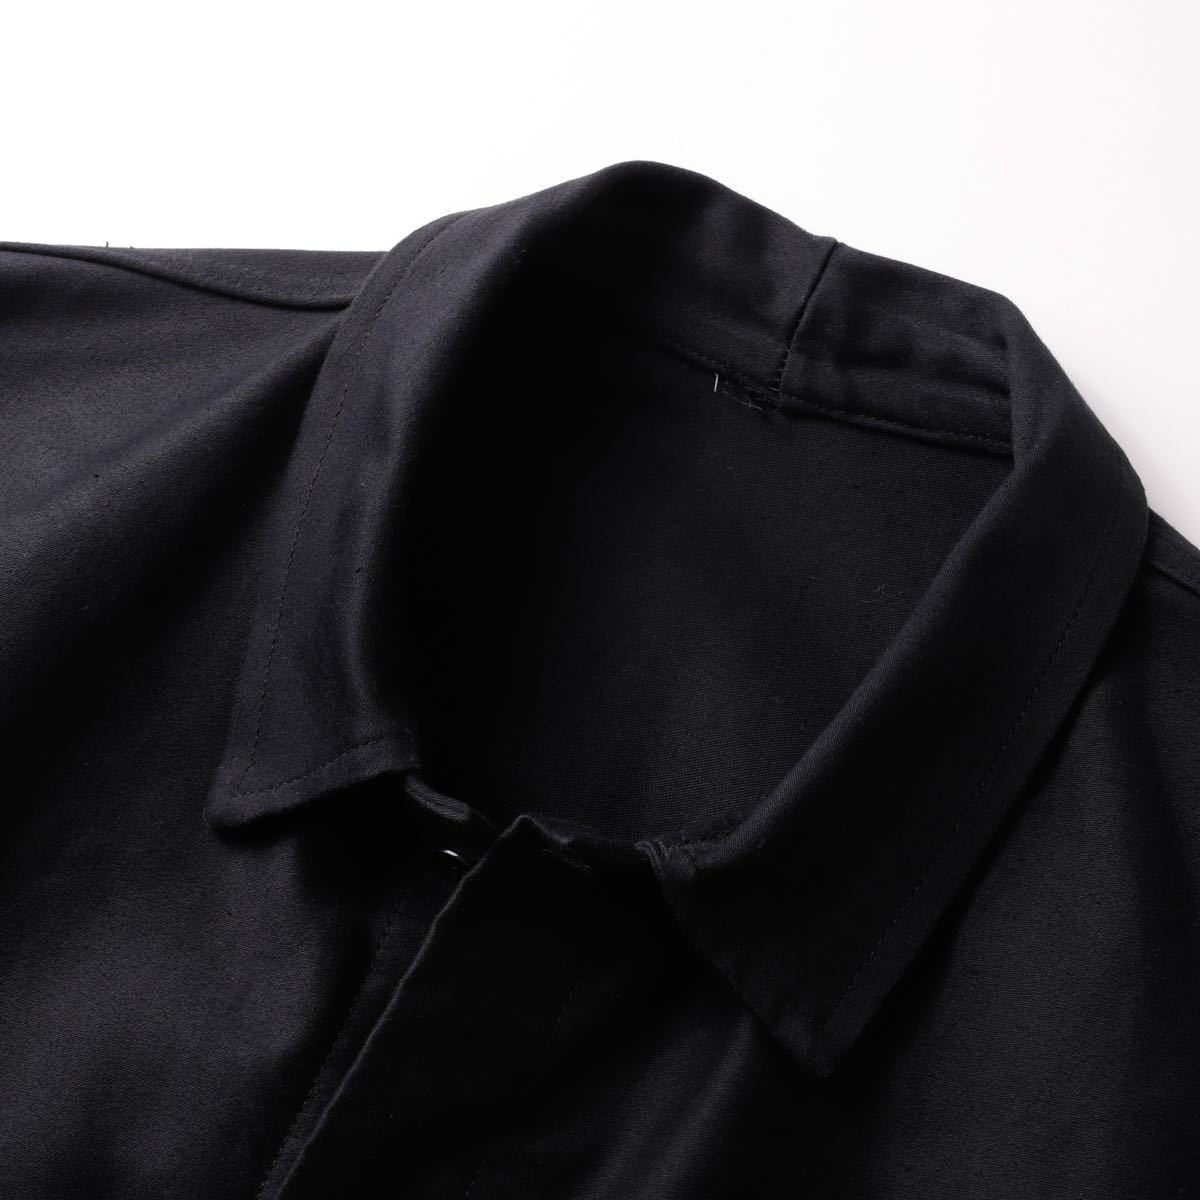 【未使用】60s French black moleskin jacket ヴィンテージ フレンチ ブラック モールスキン ジャケット カバーオール  56 フランス製